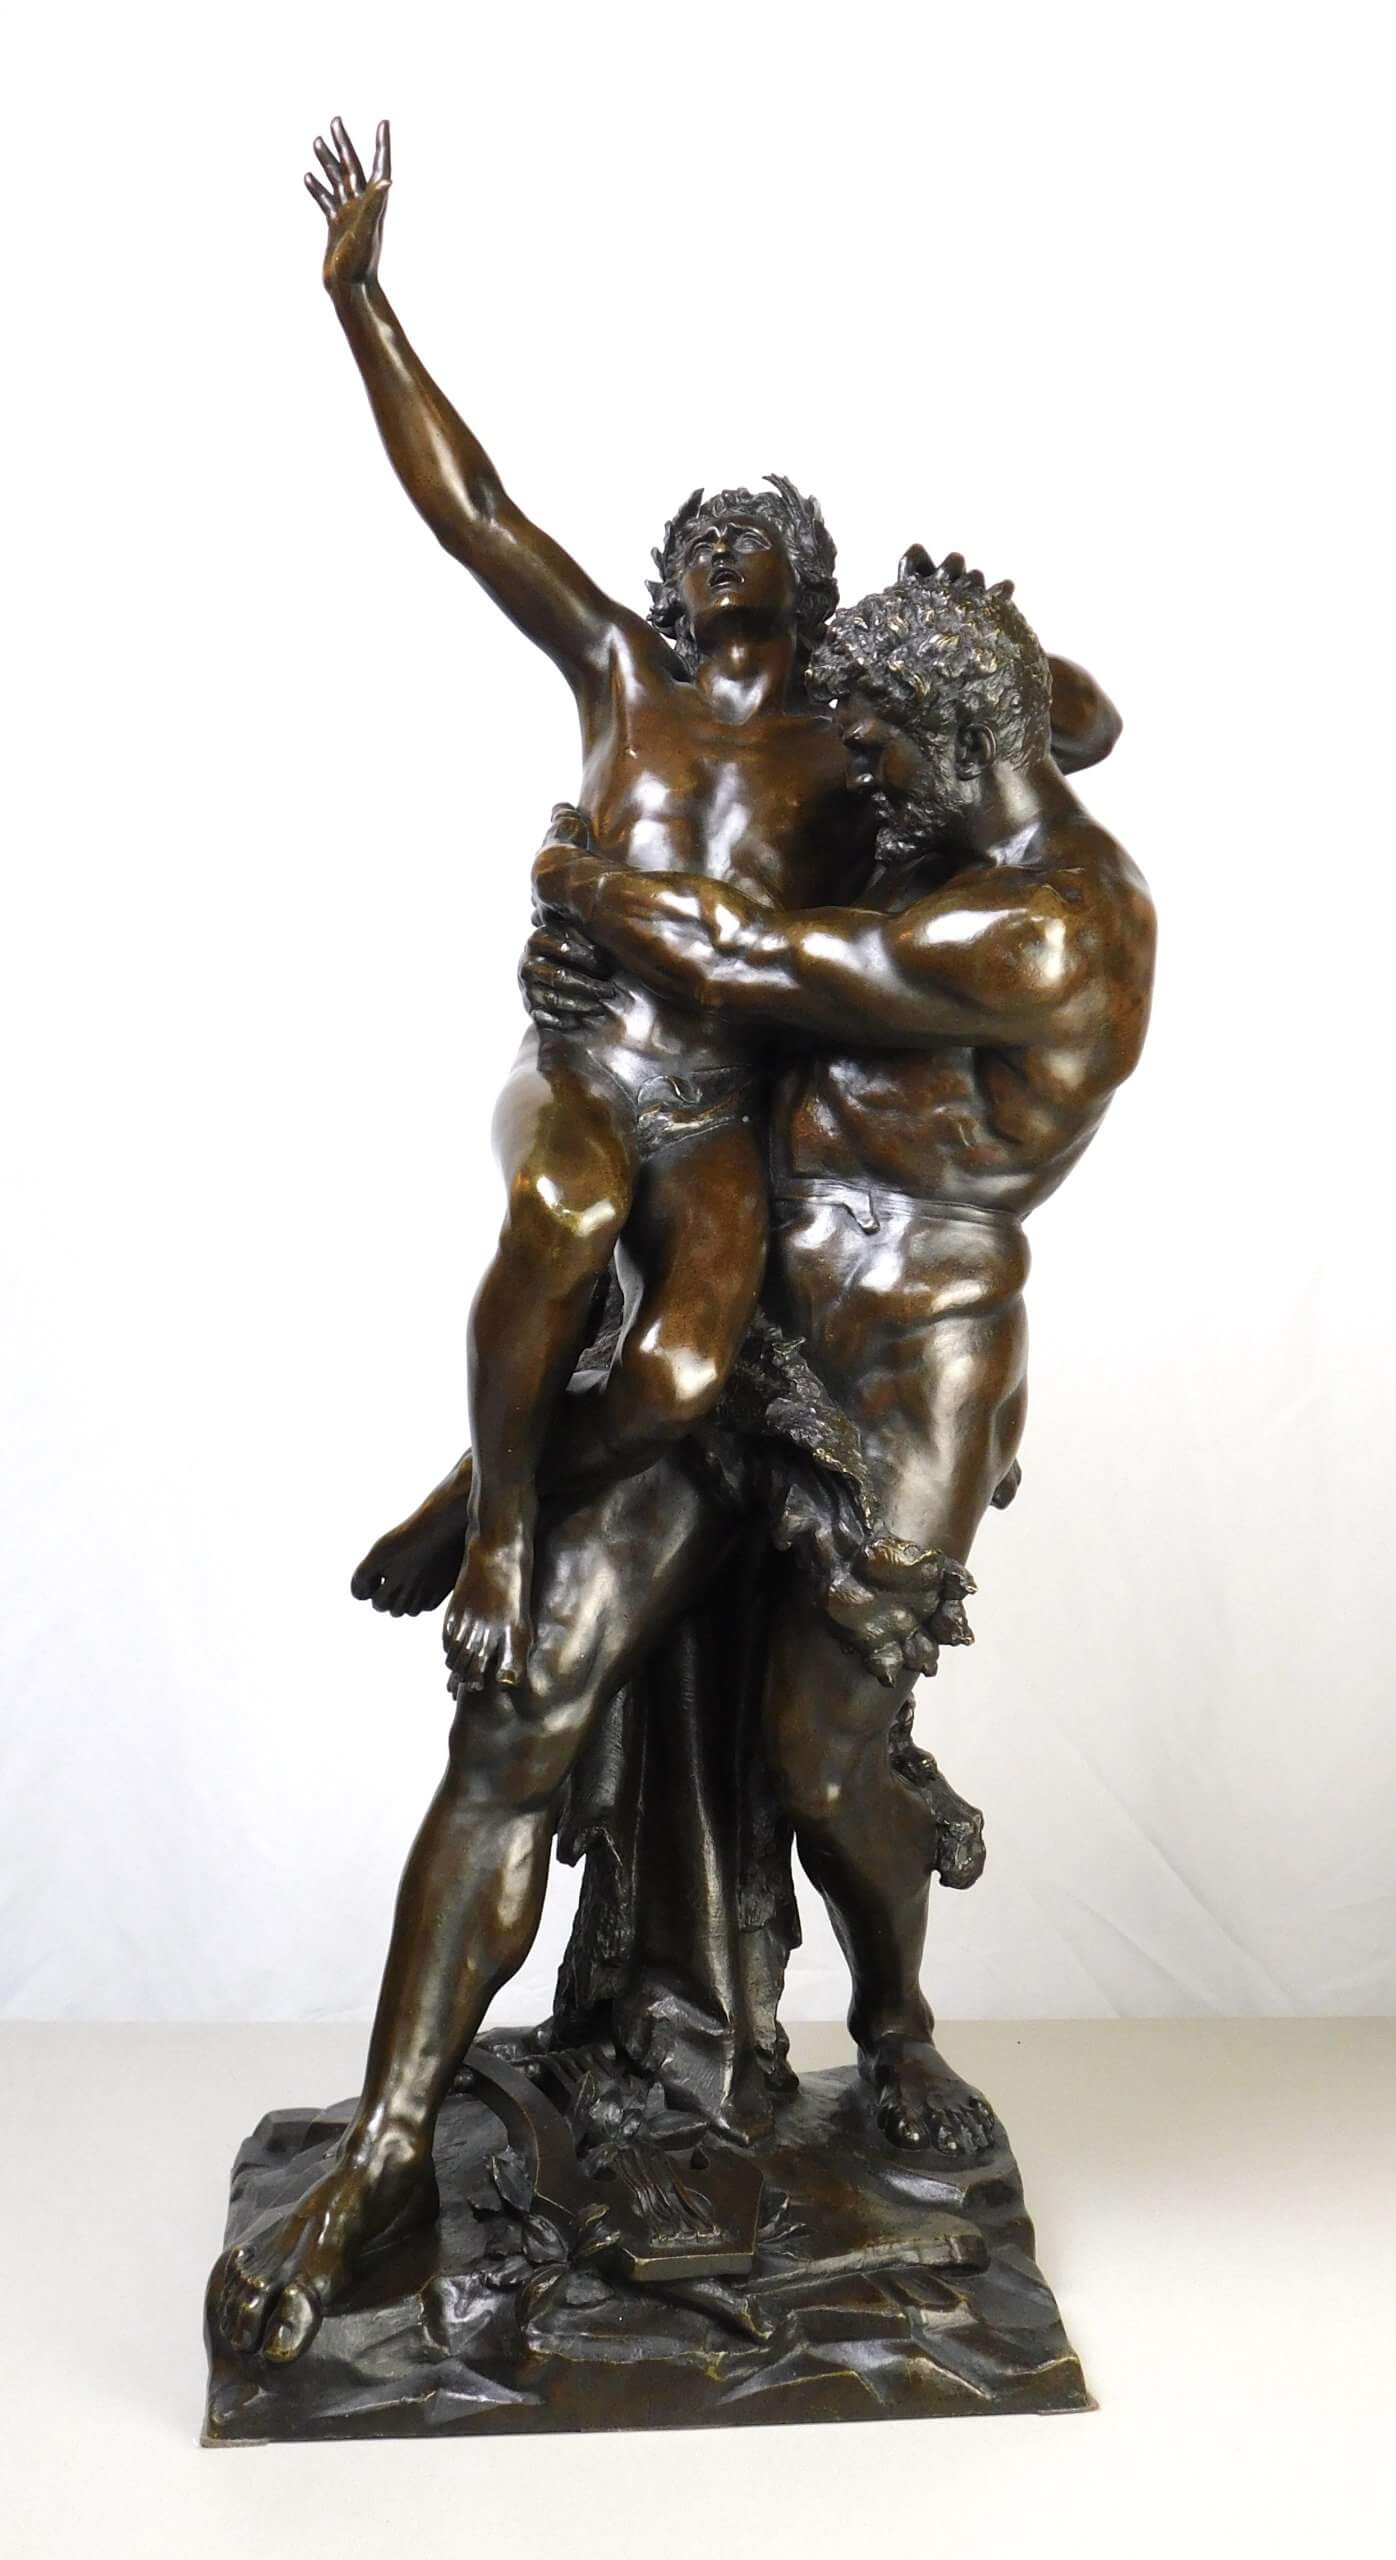 Antique bronze sculpture Genius and brute force.